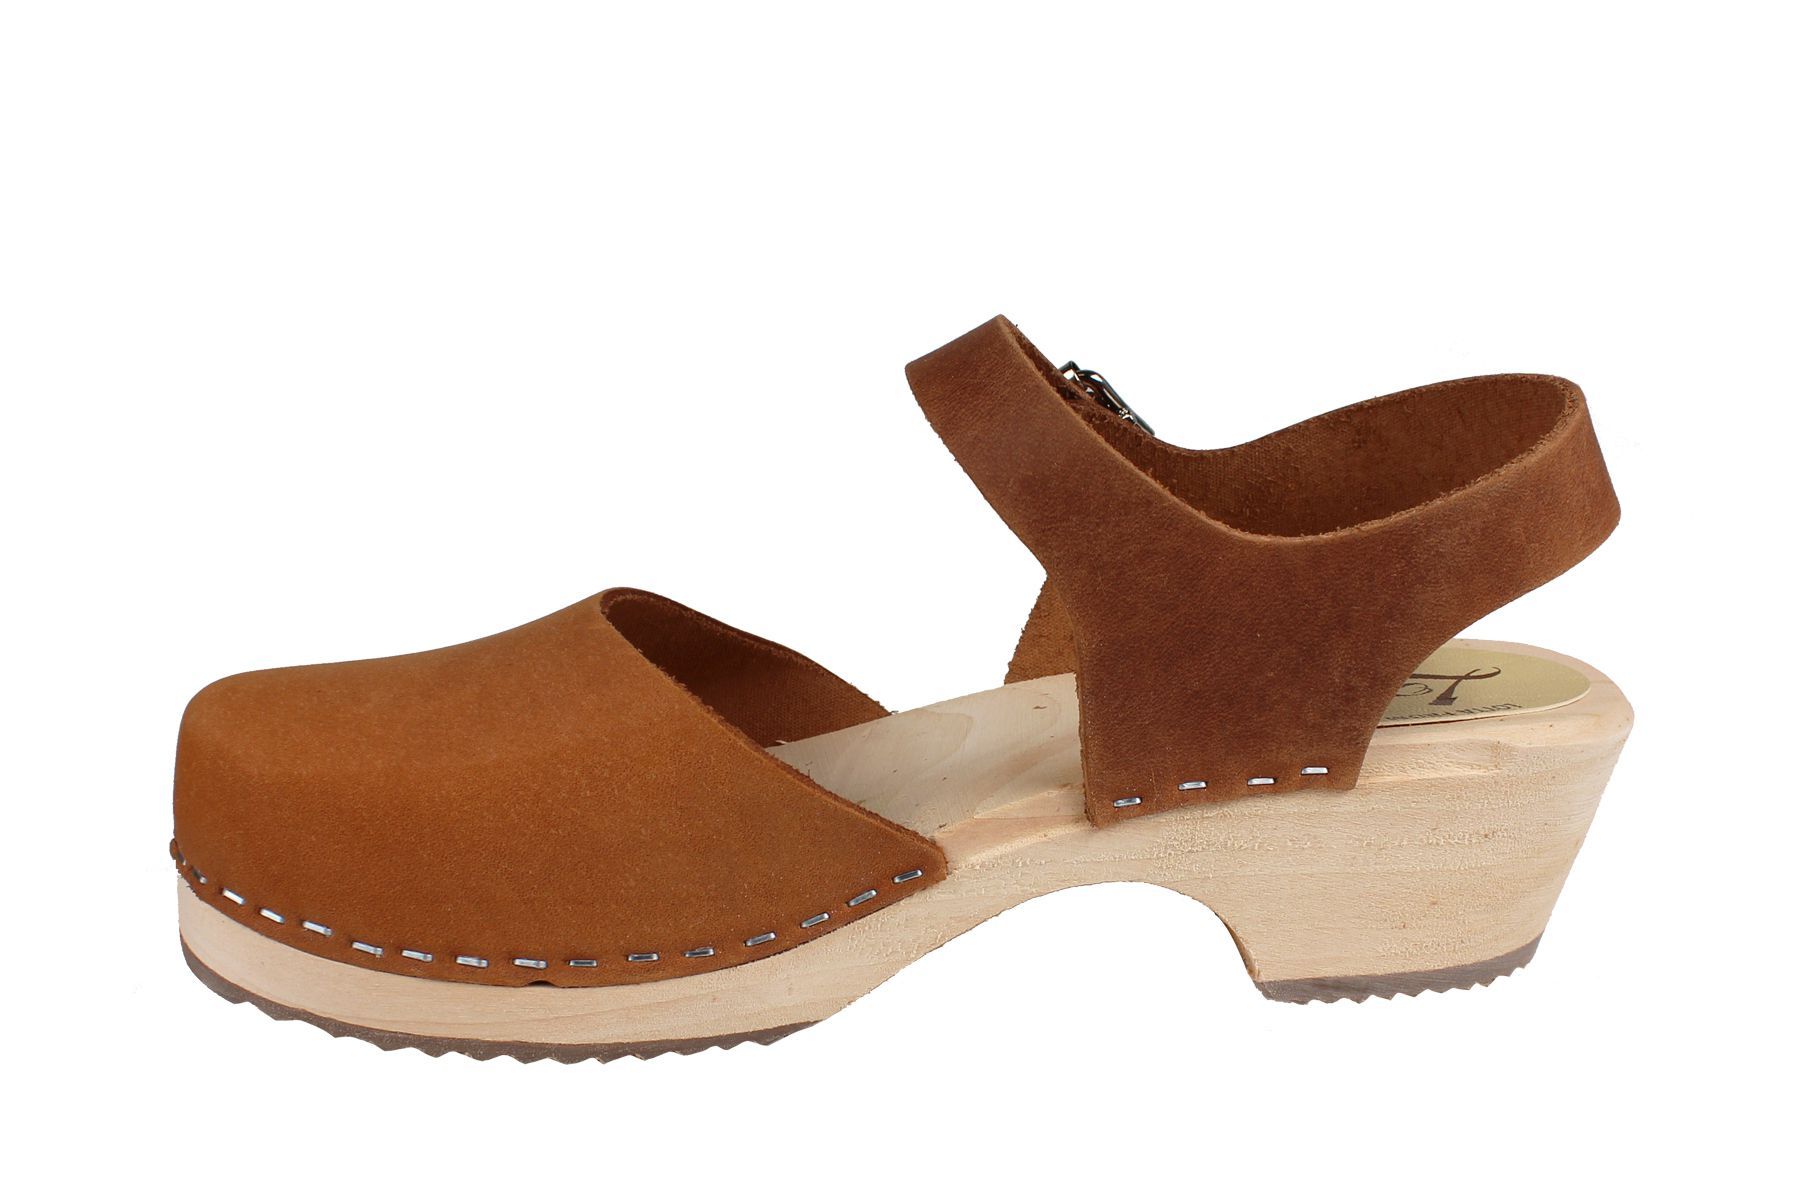 wooden low heel clogs